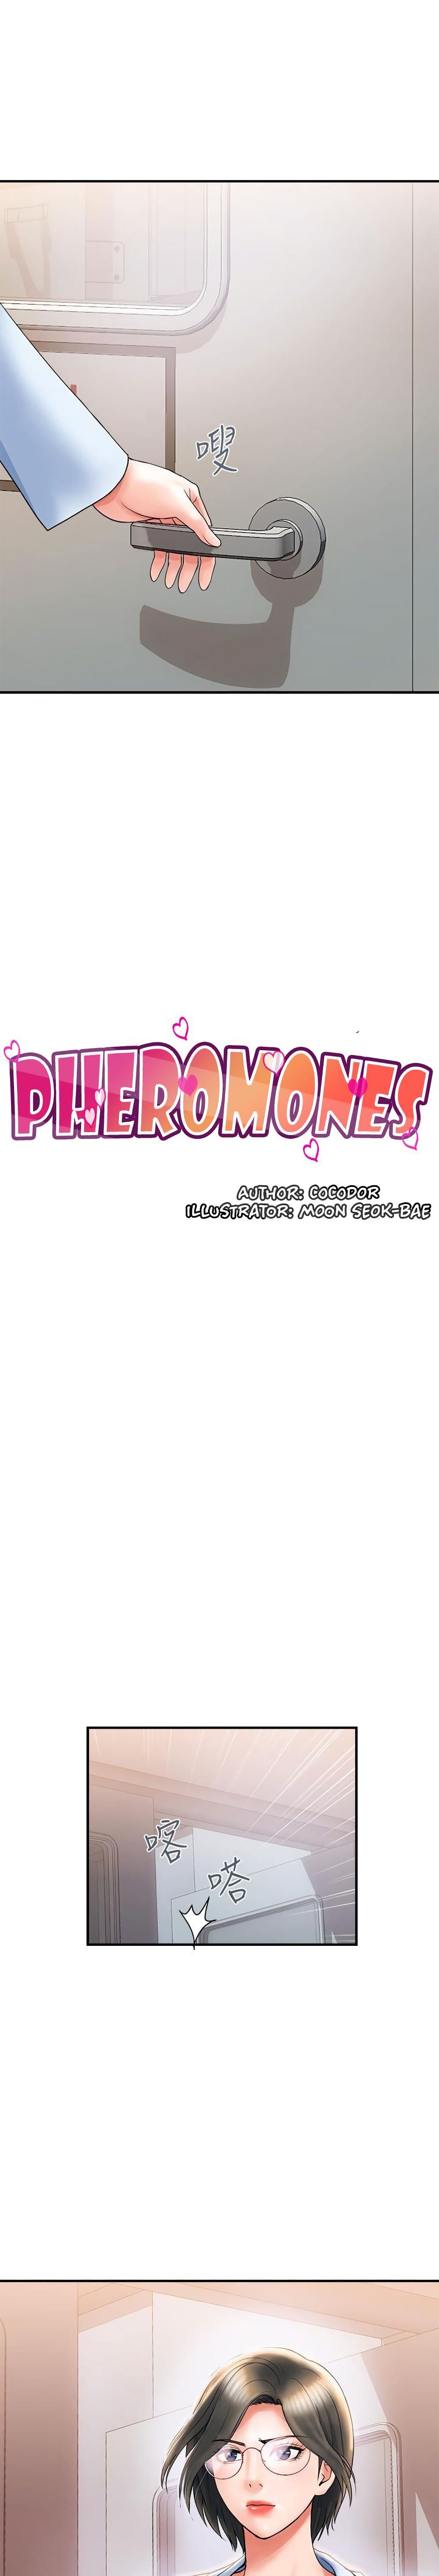 Pheromones 6 (3)